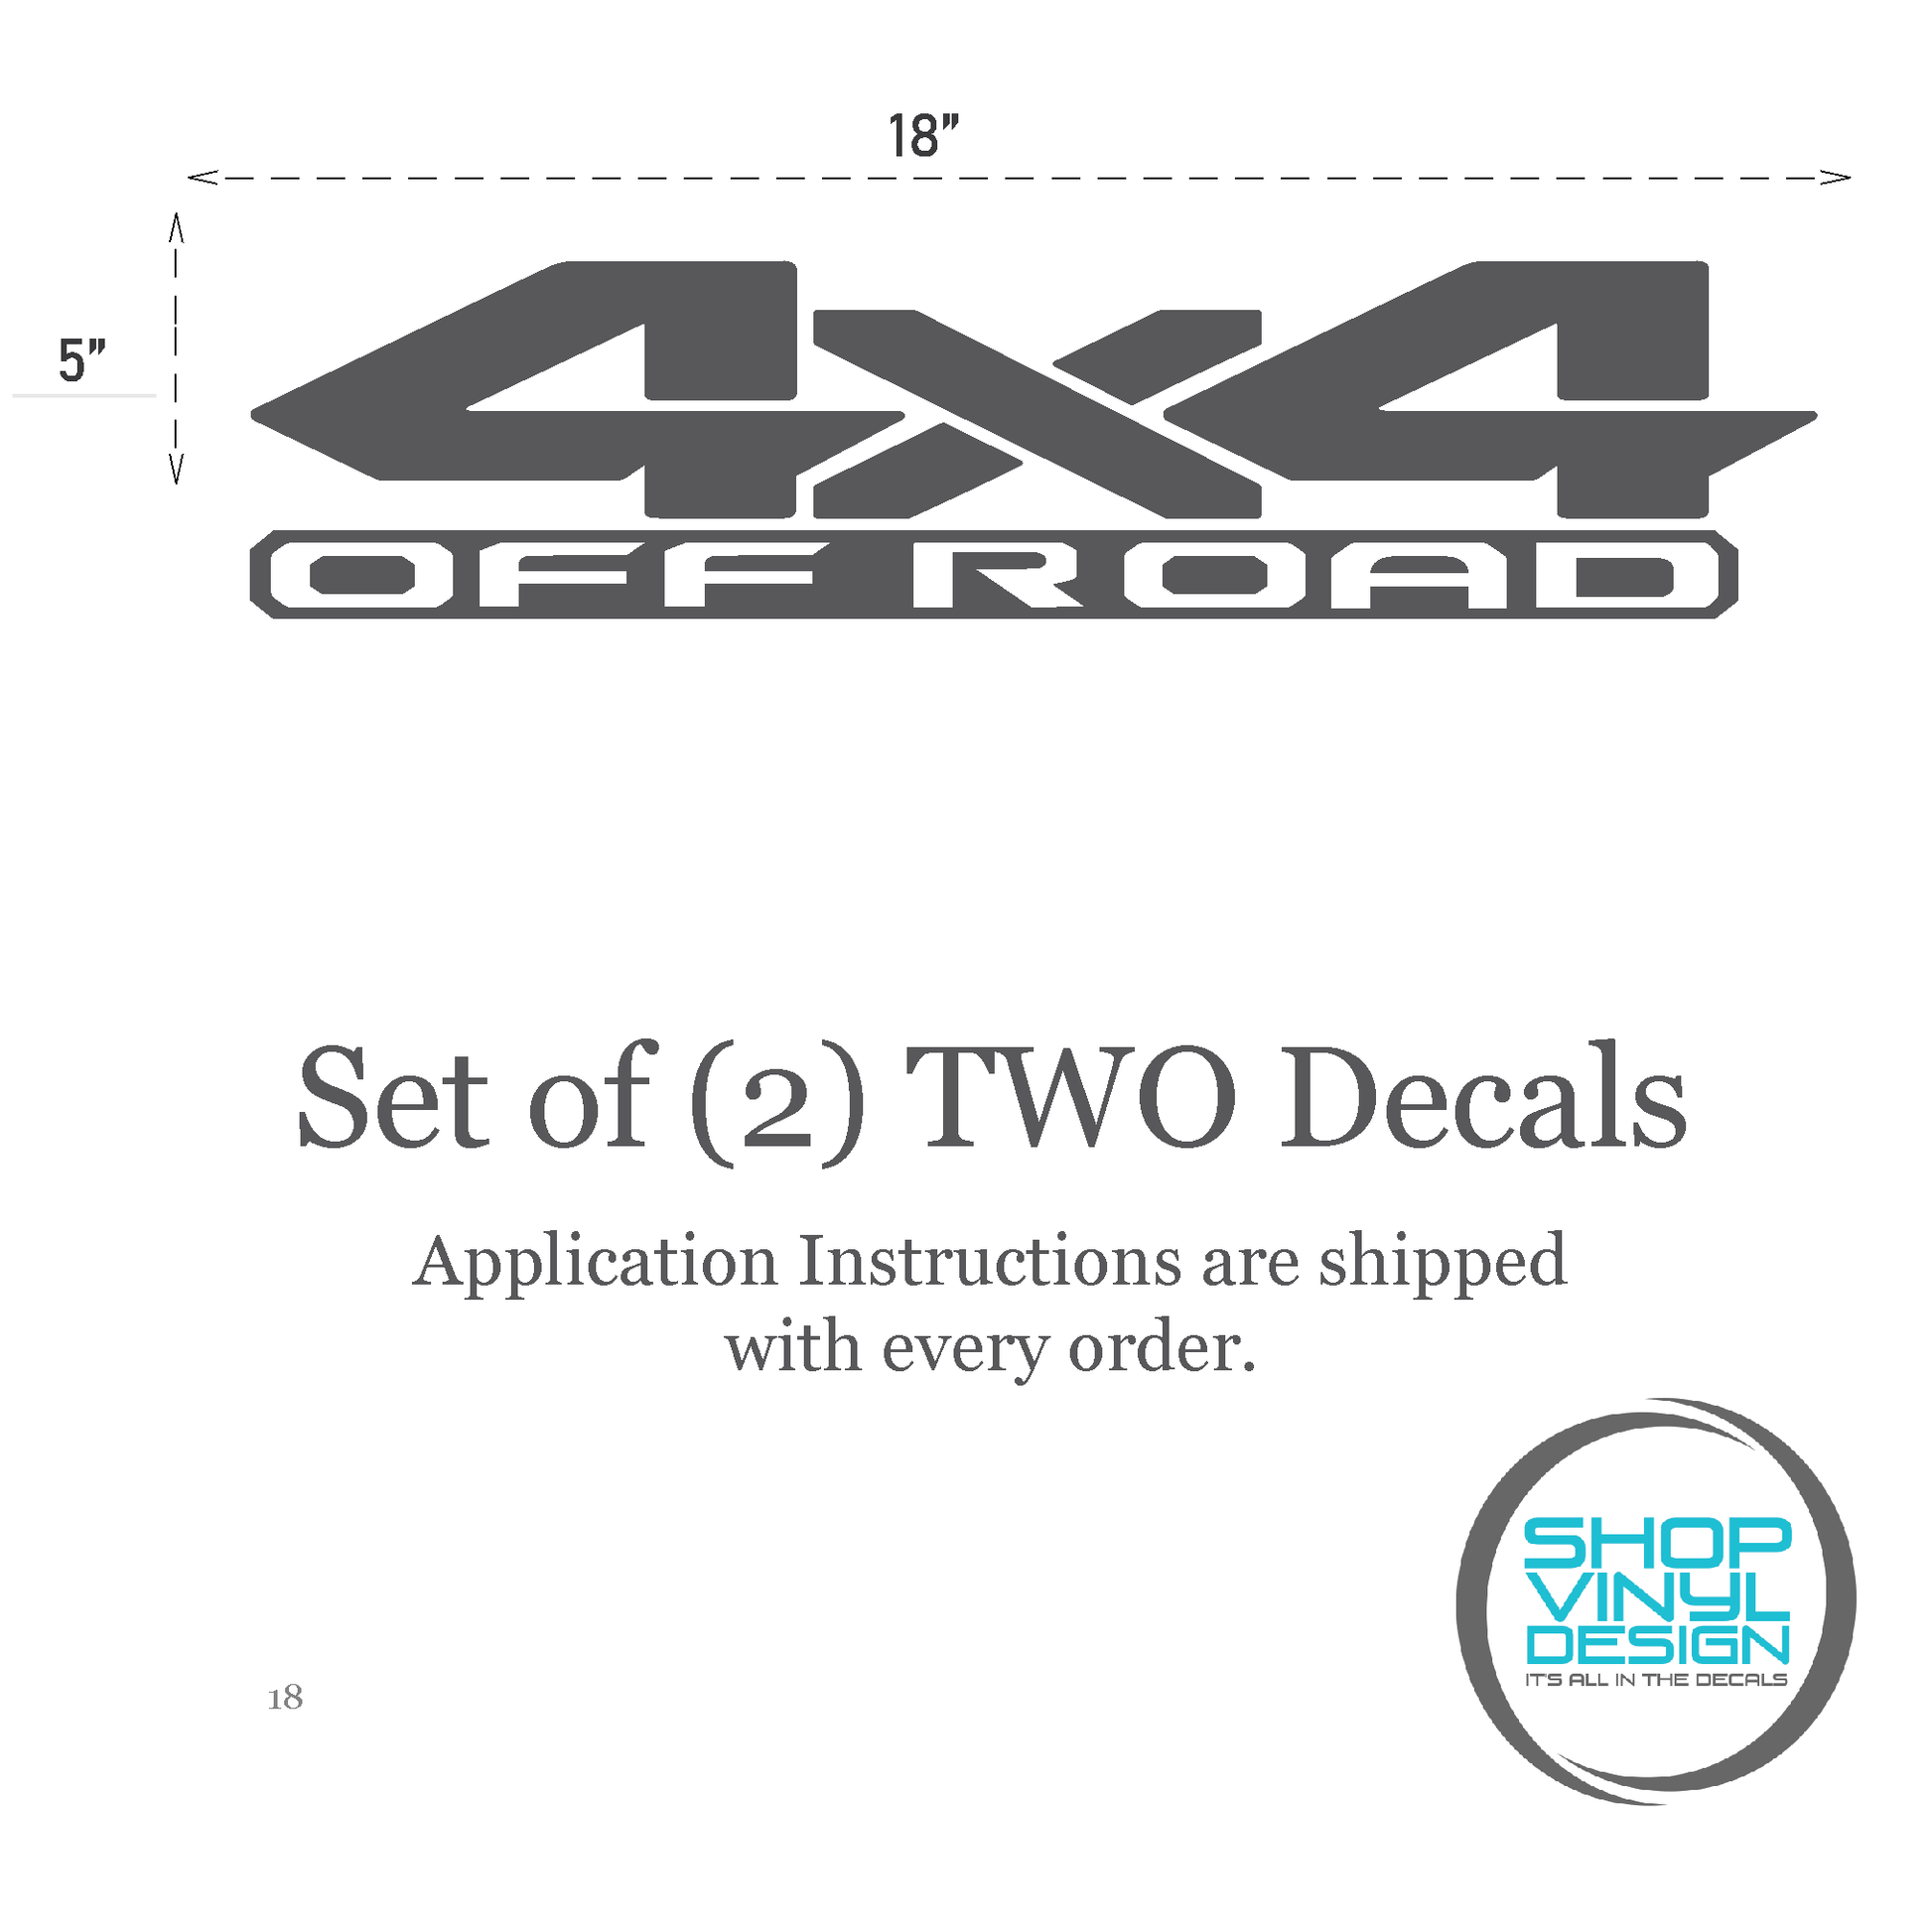 Shop Vinyl Design RAM Trucks 4 x 4 Off Road Replacement Bedside Decals #18 Vehicle decal 001 Shop Vinyl Design decals stickers